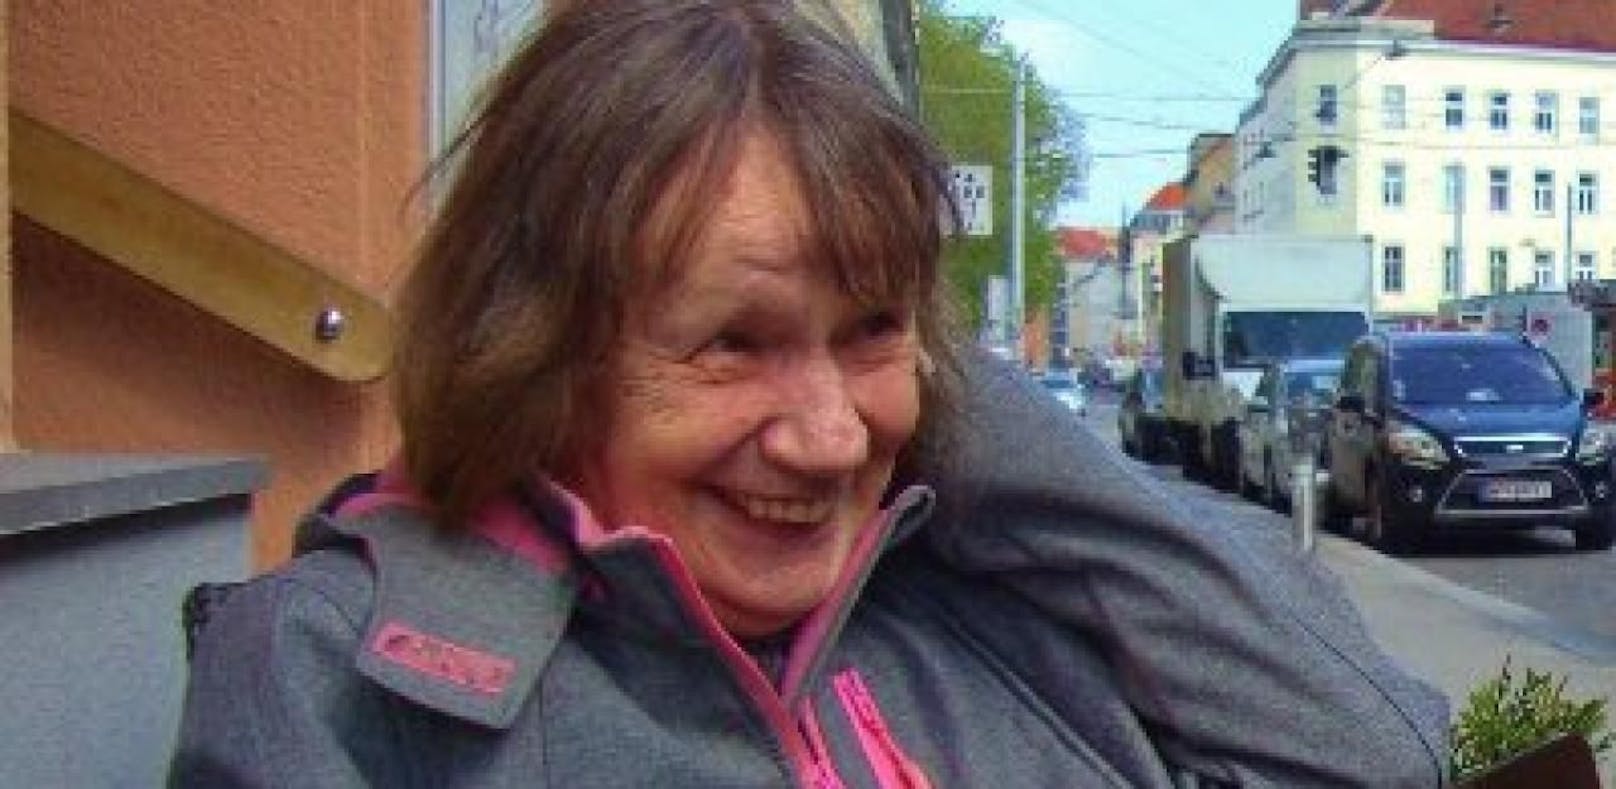 Die vermisste 74-Jährige leidet an Alzheimer und soll Probleme beim Sprechen haben. Zuletzt wurde sie in Wien-Meidling gesehen.